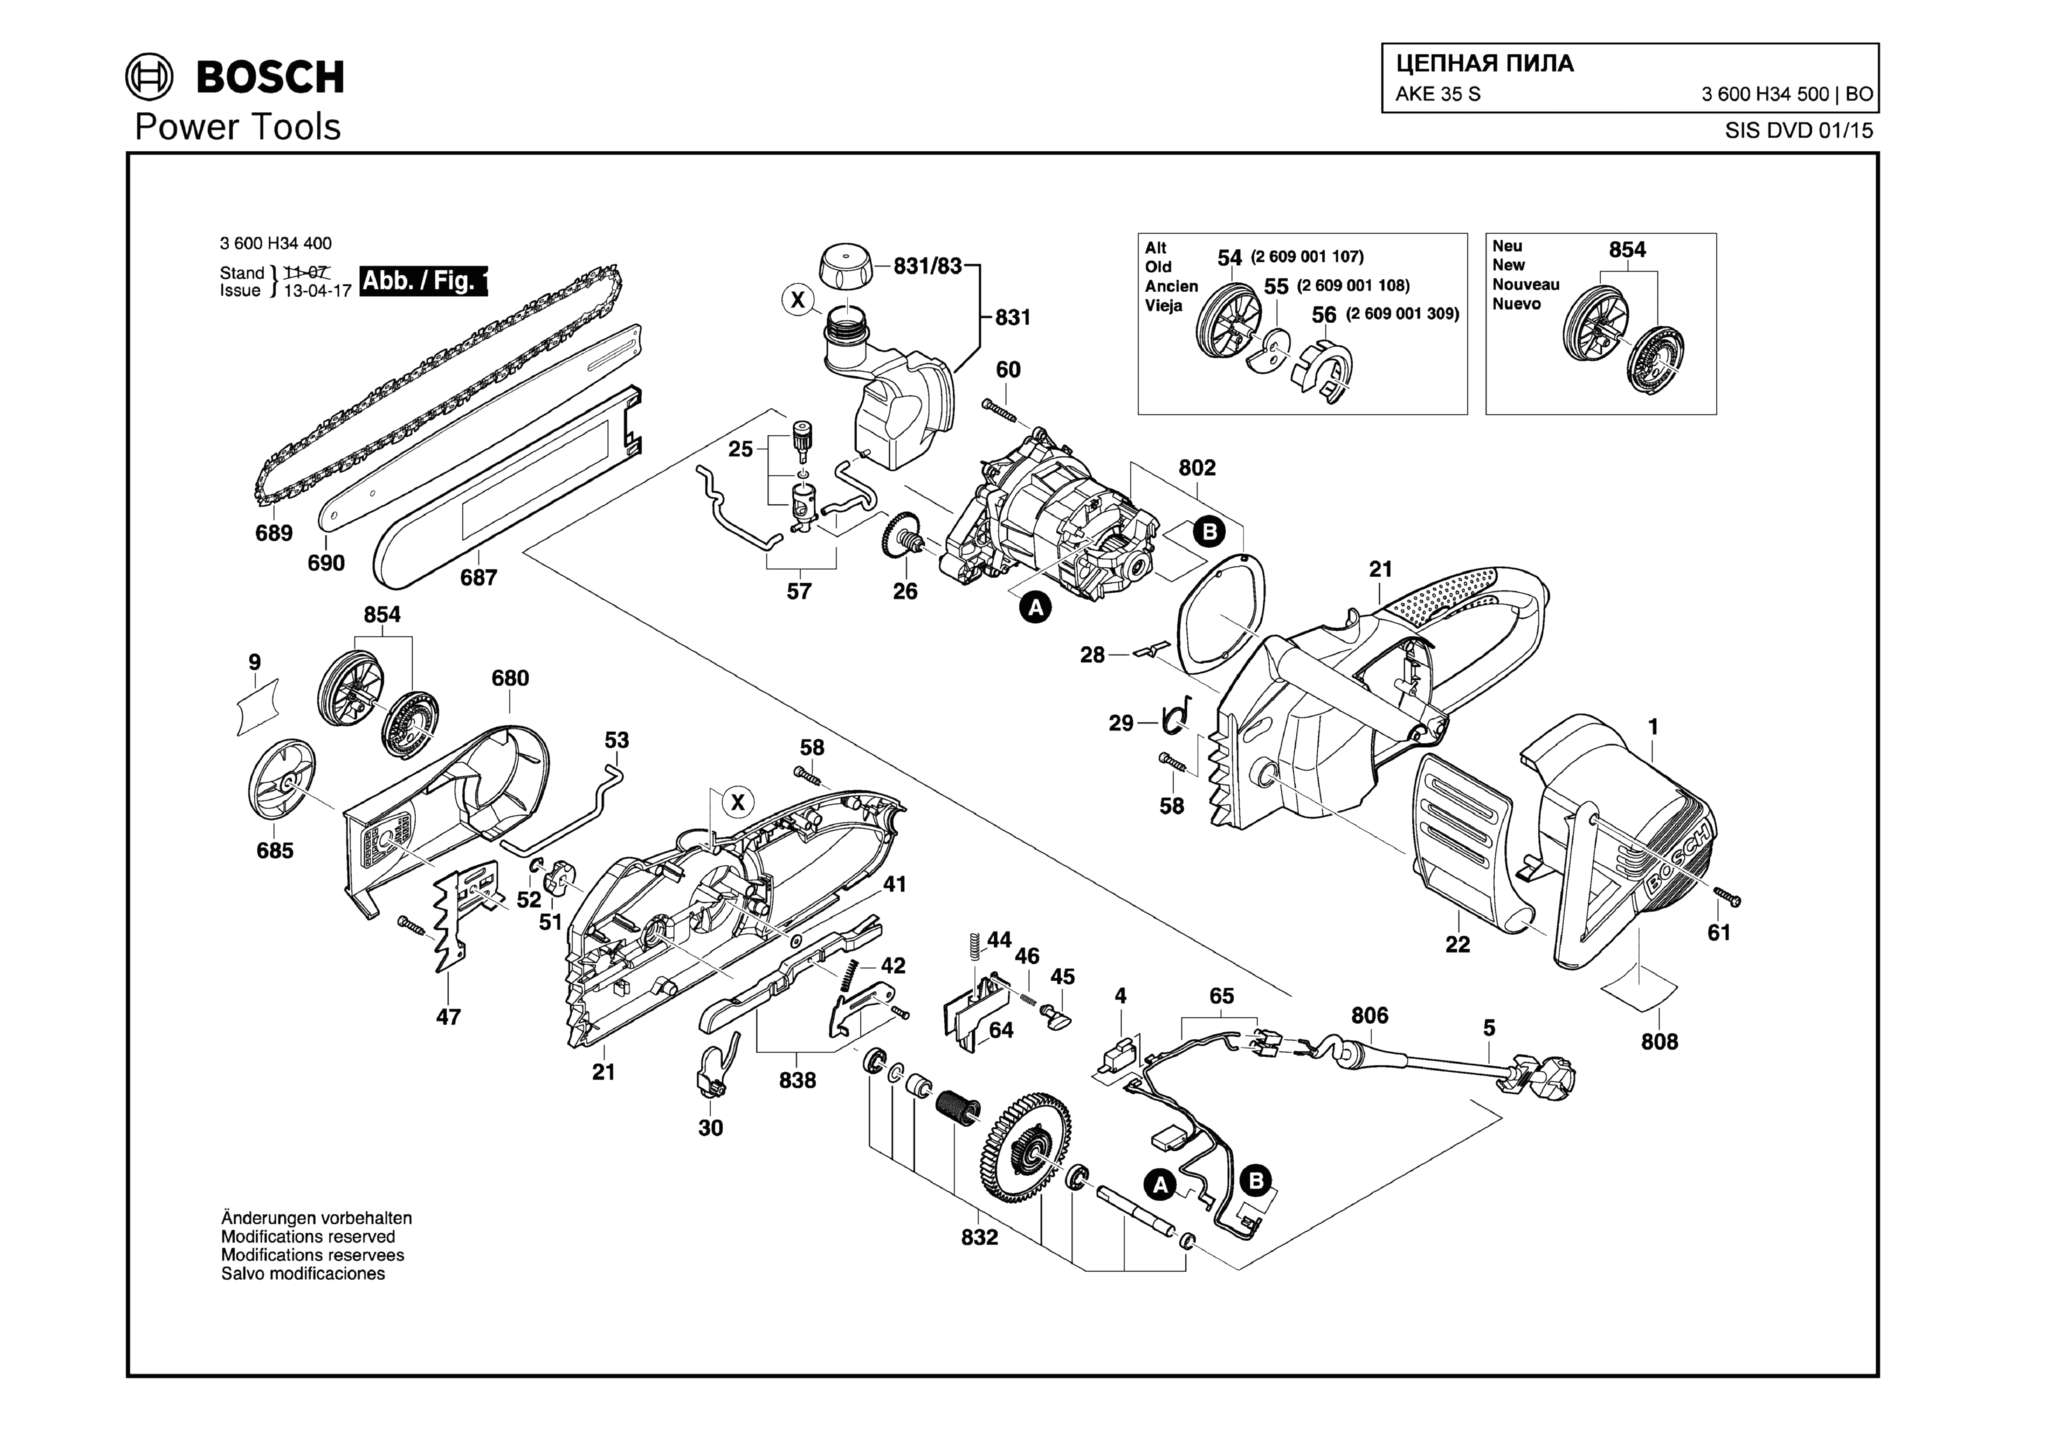 Запчасти, схема и деталировка Bosch AKE 35 S (ТИП 3600H34500)